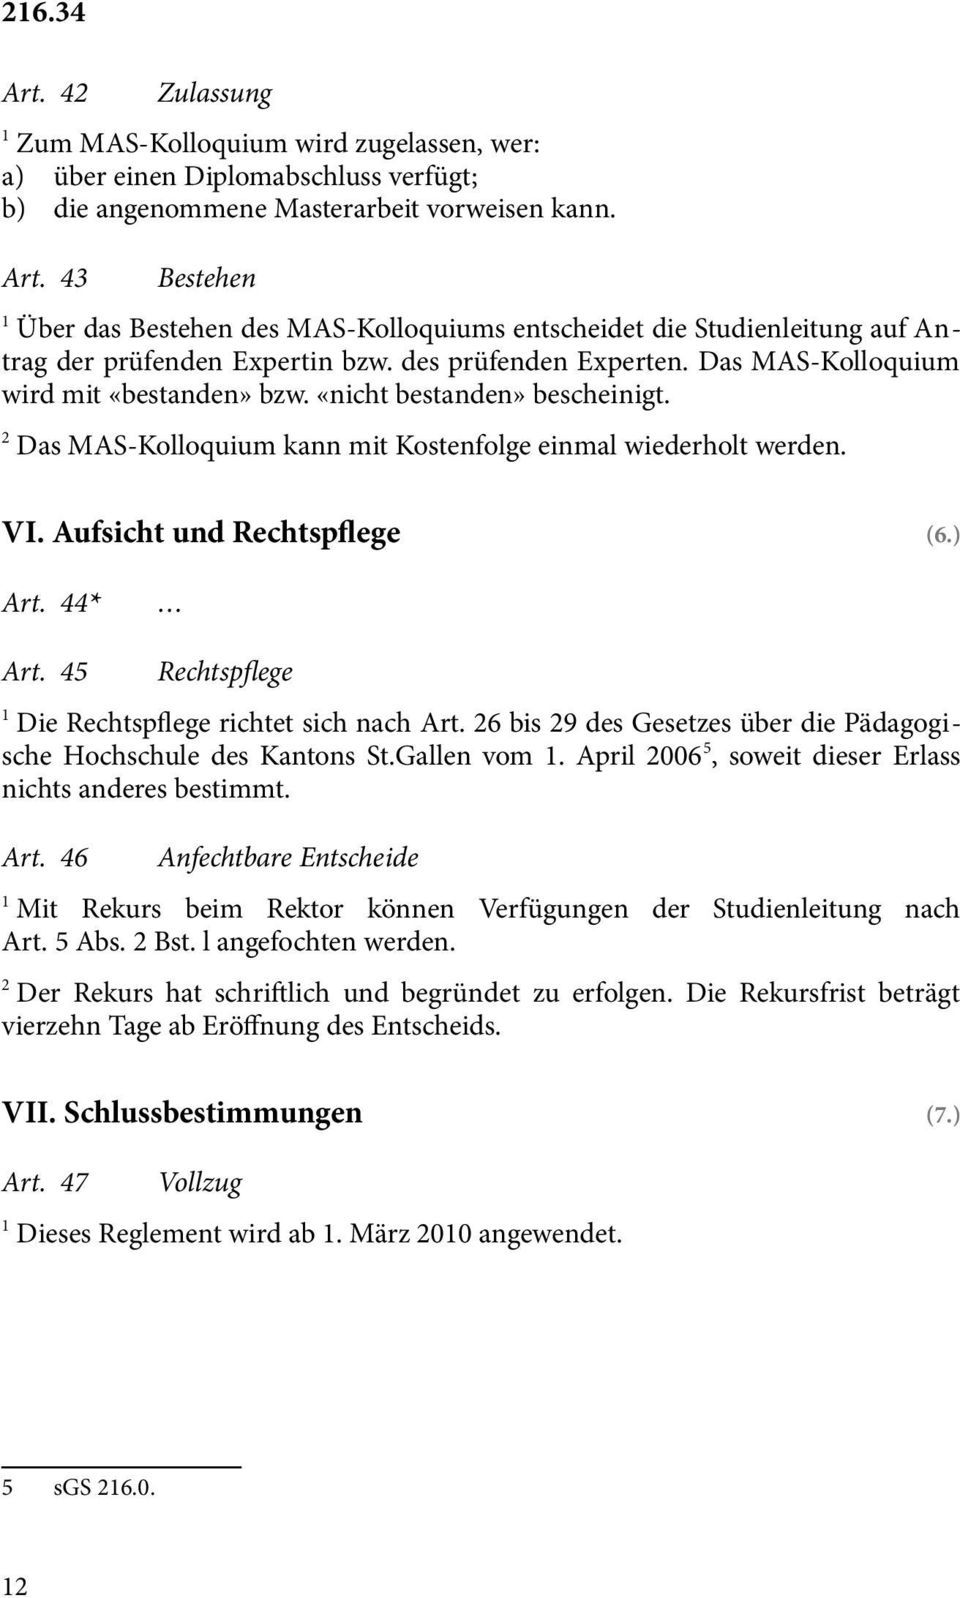 ) Art. 44* Art. 45 Rechtspflege Die Rechtspflege richtet sich nach Art. 6 bis 9 des Gesetzes über die Pädagogische Hochschule des Kantons St.Gallen vom.